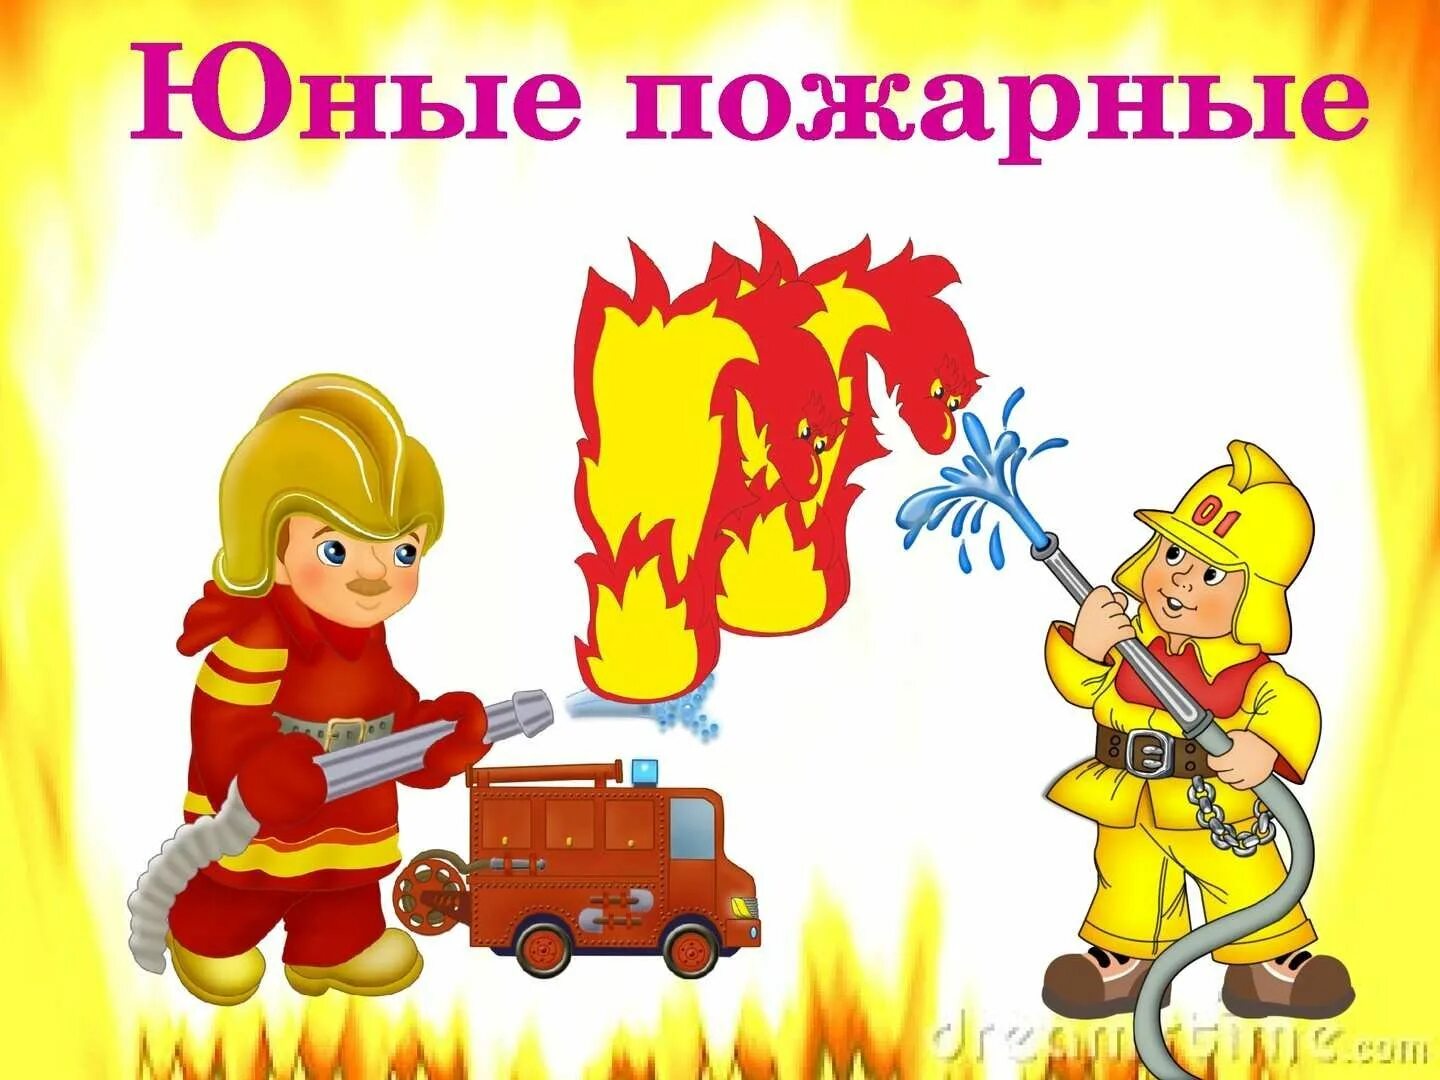 Слова пч. Пожарная безопасность для детей. Пожарная безопасность для детей в детском саду. Юный пожарный.